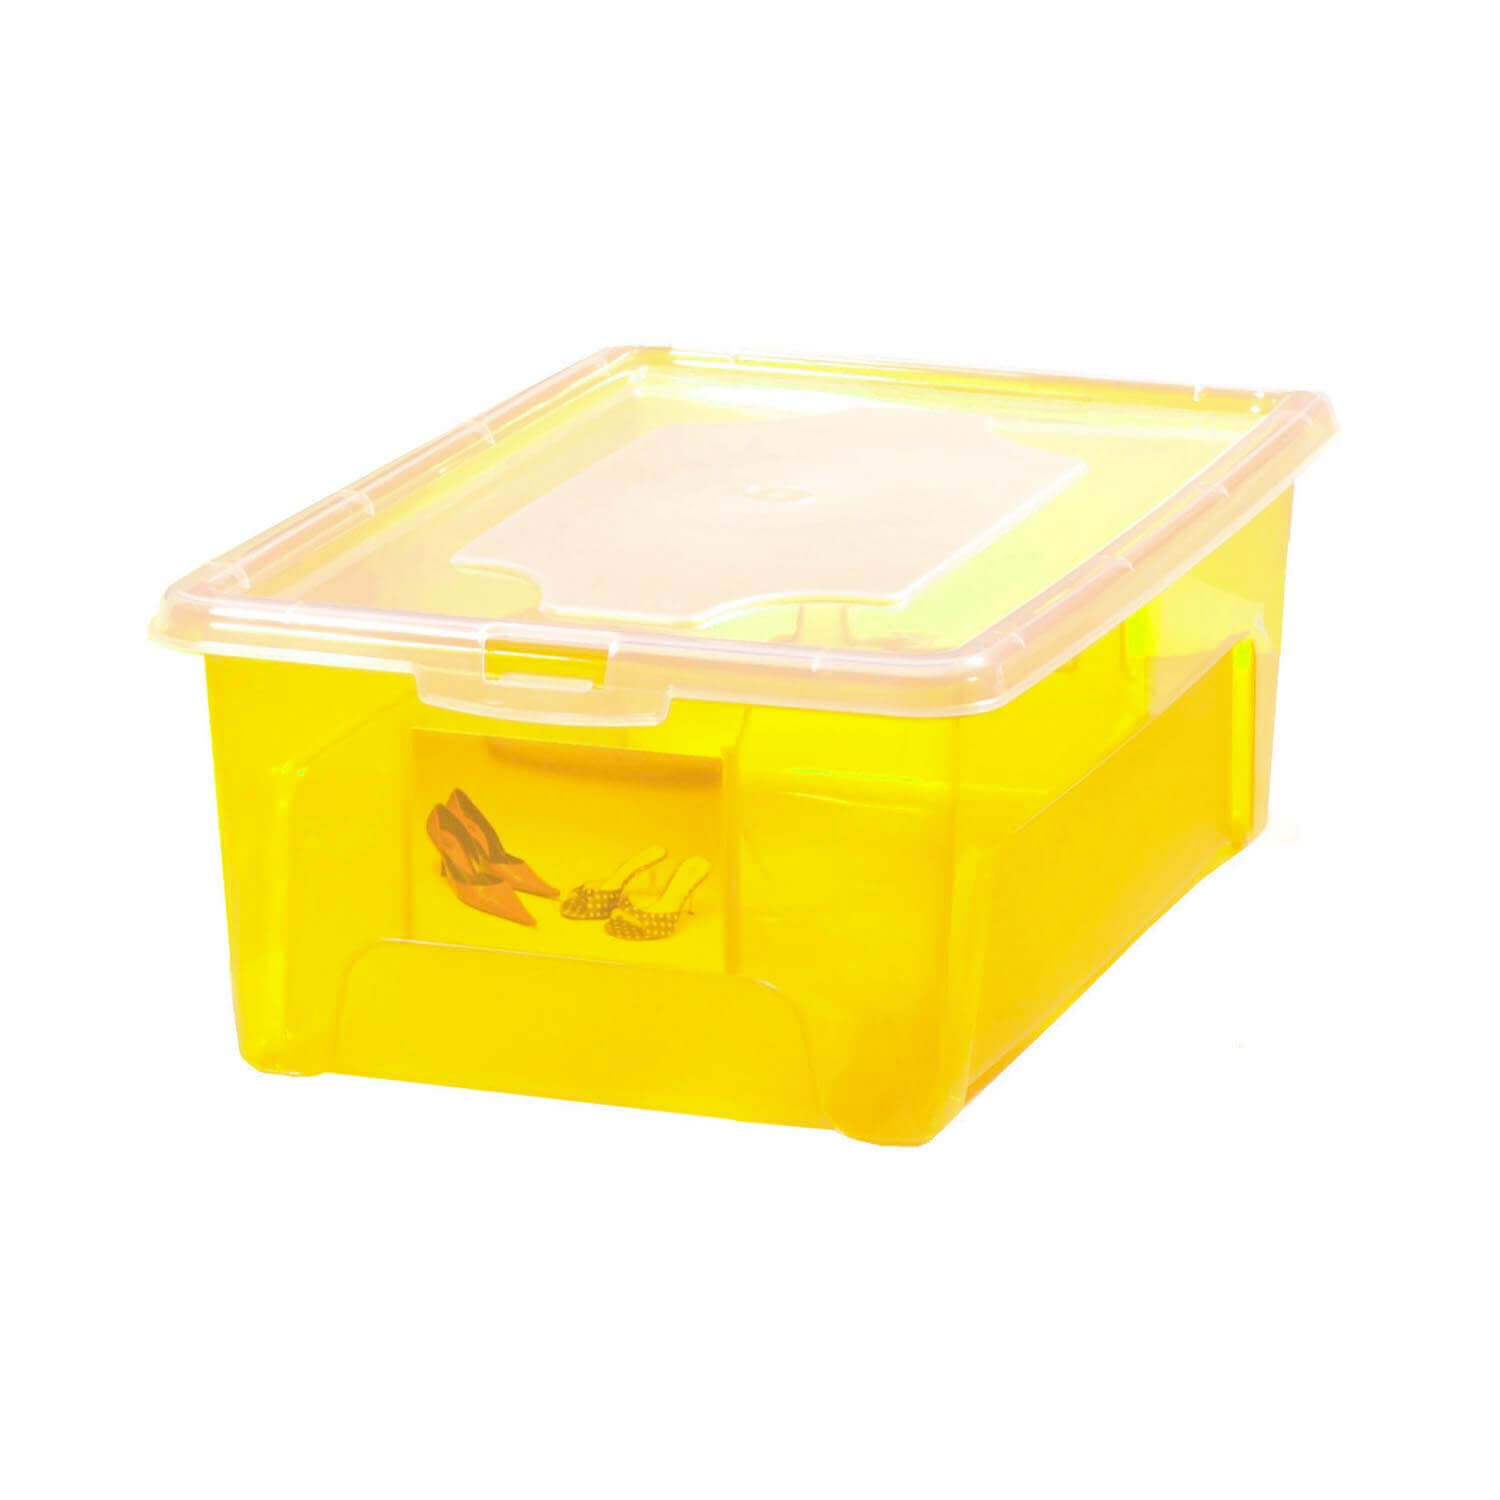 Aufbewahrungsbox "Easybox" 18 L in gelb, Kunststoffbox